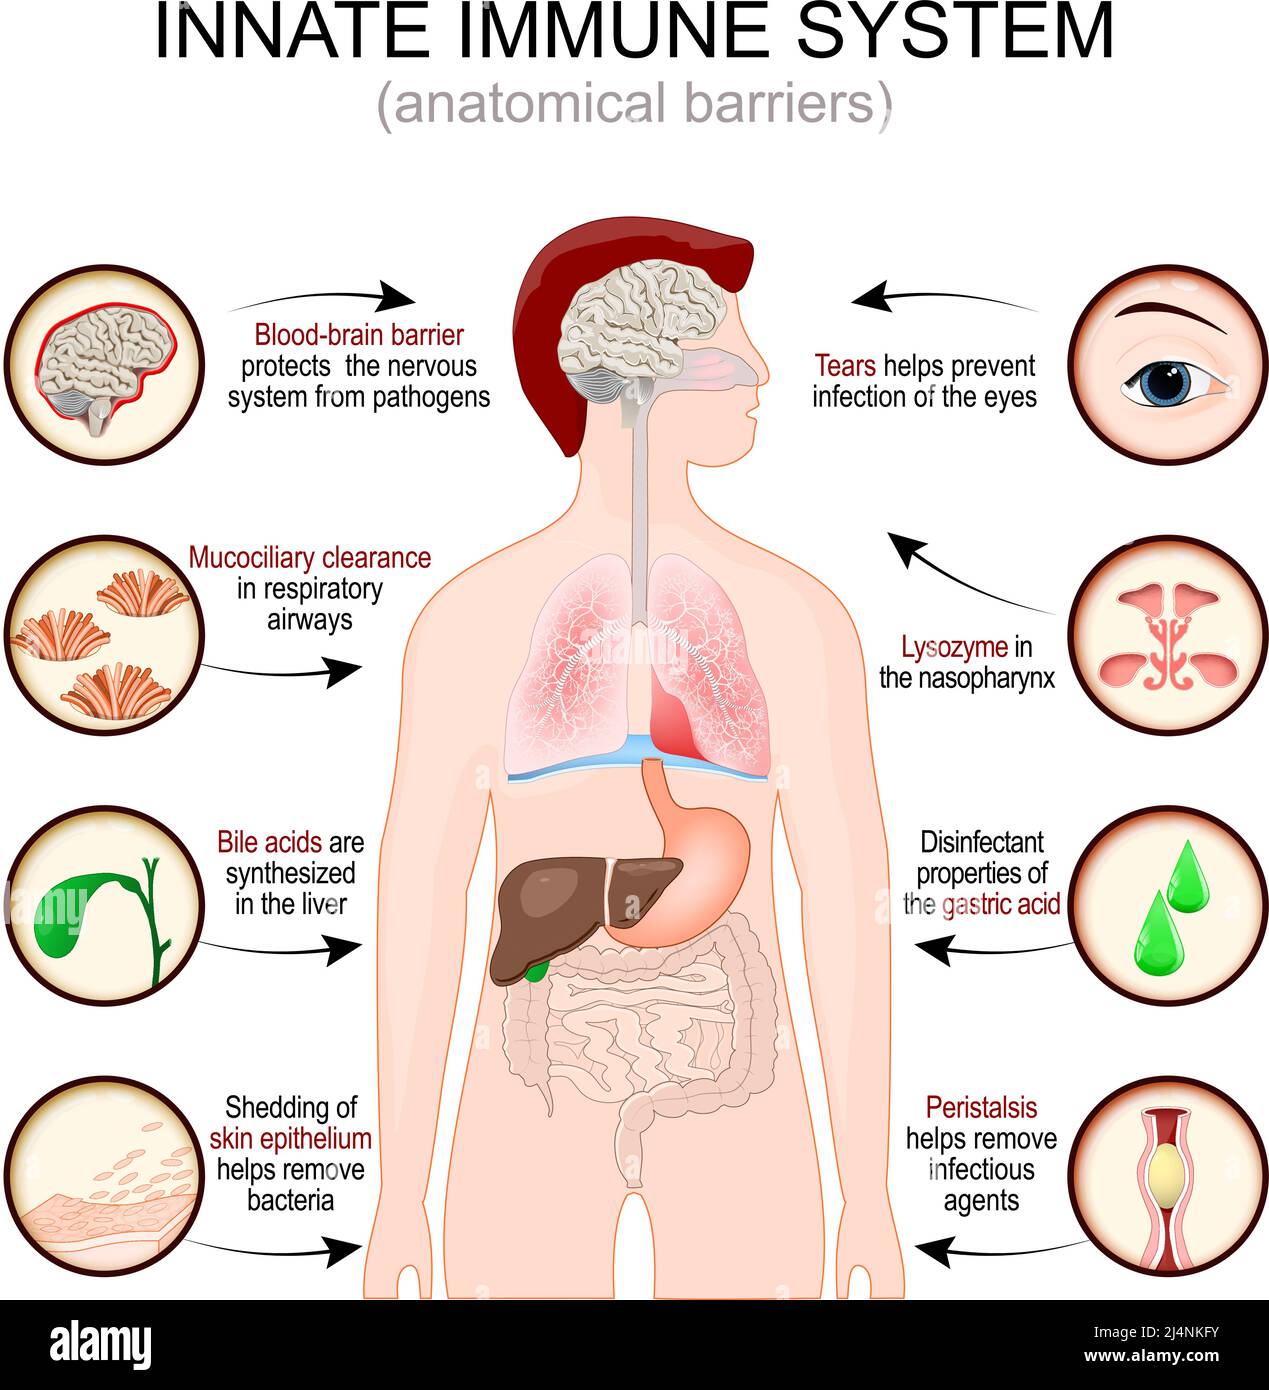 Sistema immunitario innato. Barriere anatomiche. Silhouette uomo con organi interni. La barriera emato-encefalica protegge il sistema nervoso dai patogeni. Illustrazione Vettoriale